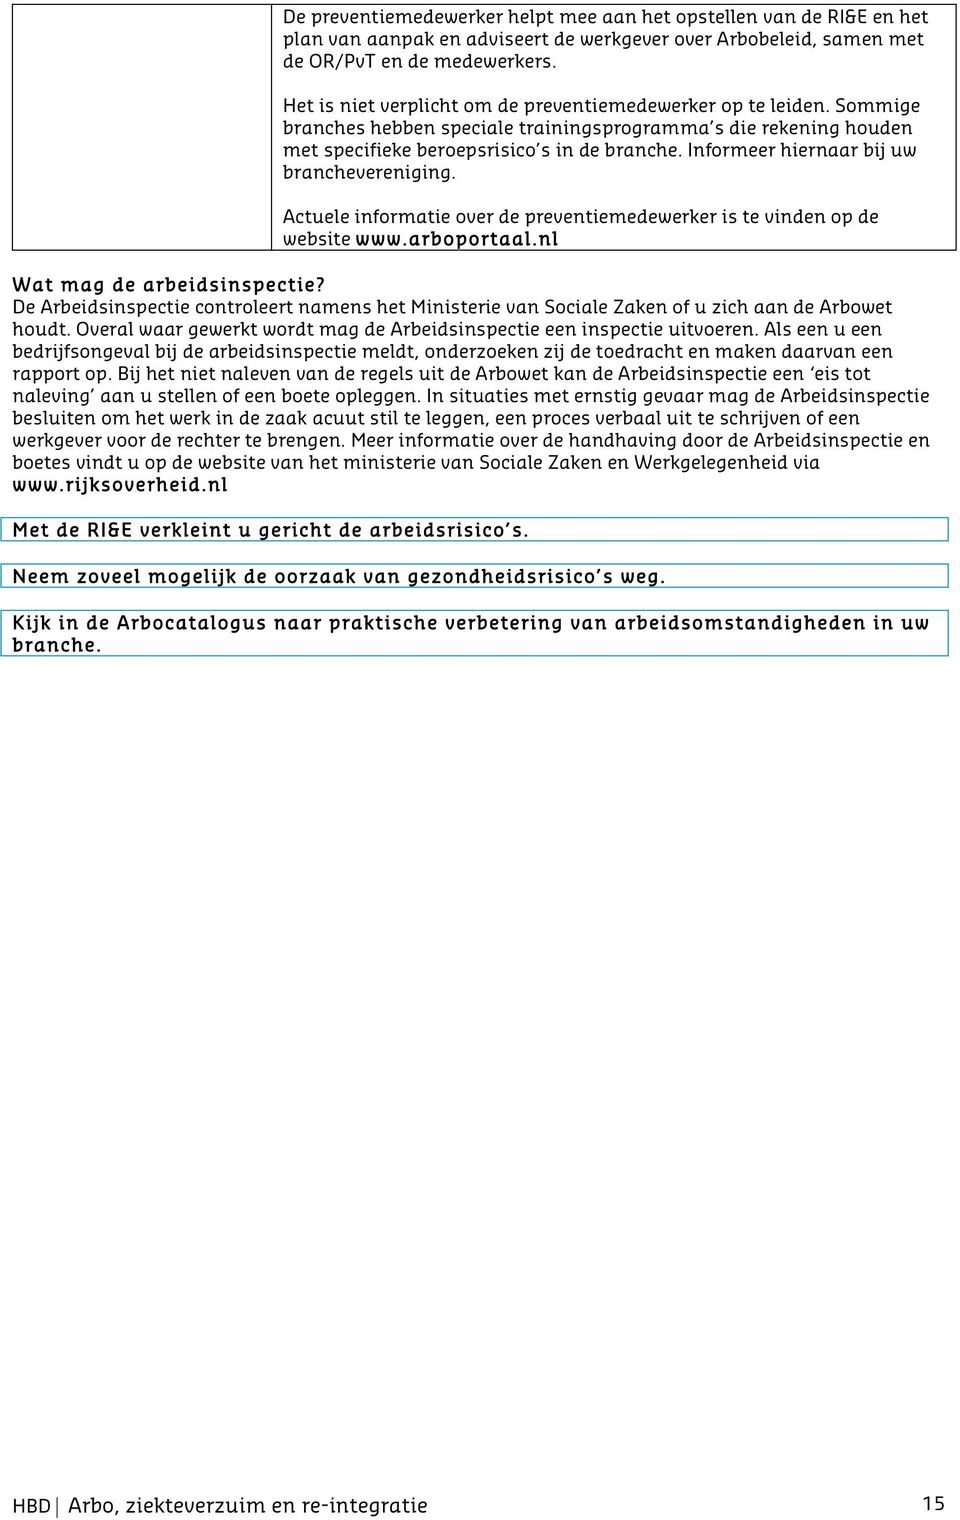 Informeer hiernaar bij uw branchevereniging. Actuele informatie over de preventiemedewerker is te vinden op de website www.arboportaal.nl Wat mag de arbeidsinspectie?